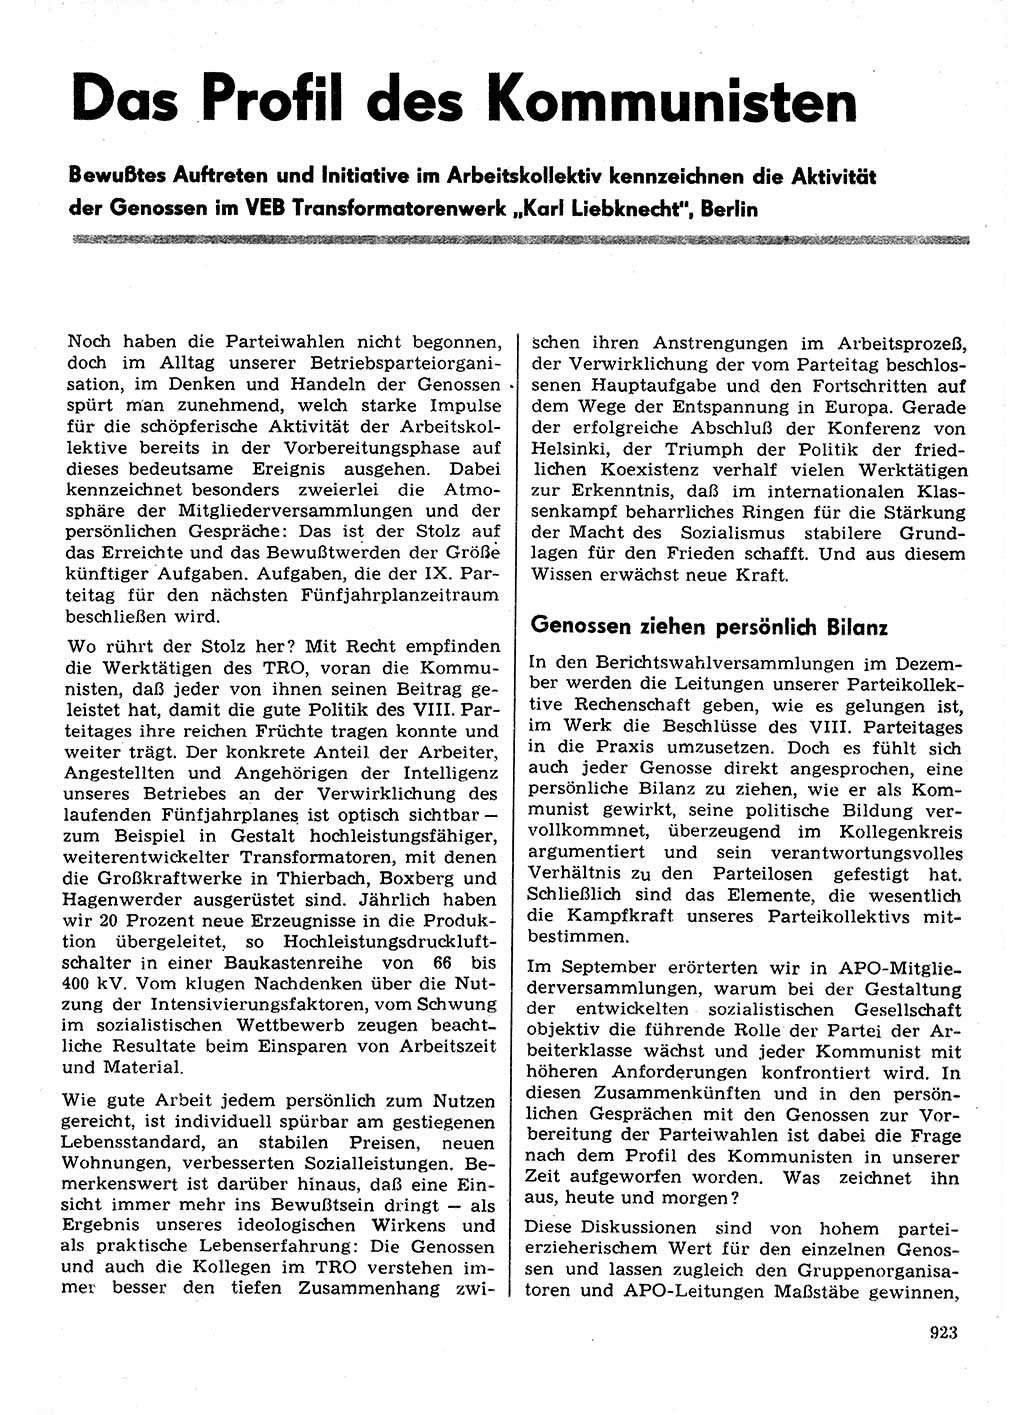 Neuer Weg (NW), Organ des Zentralkomitees (ZK) der SED (Sozialistische Einheitspartei Deutschlands) für Fragen des Parteilebens, 30. Jahrgang [Deutsche Demokratische Republik (DDR)] 1975, Seite 923 (NW ZK SED DDR 1975, S. 923)